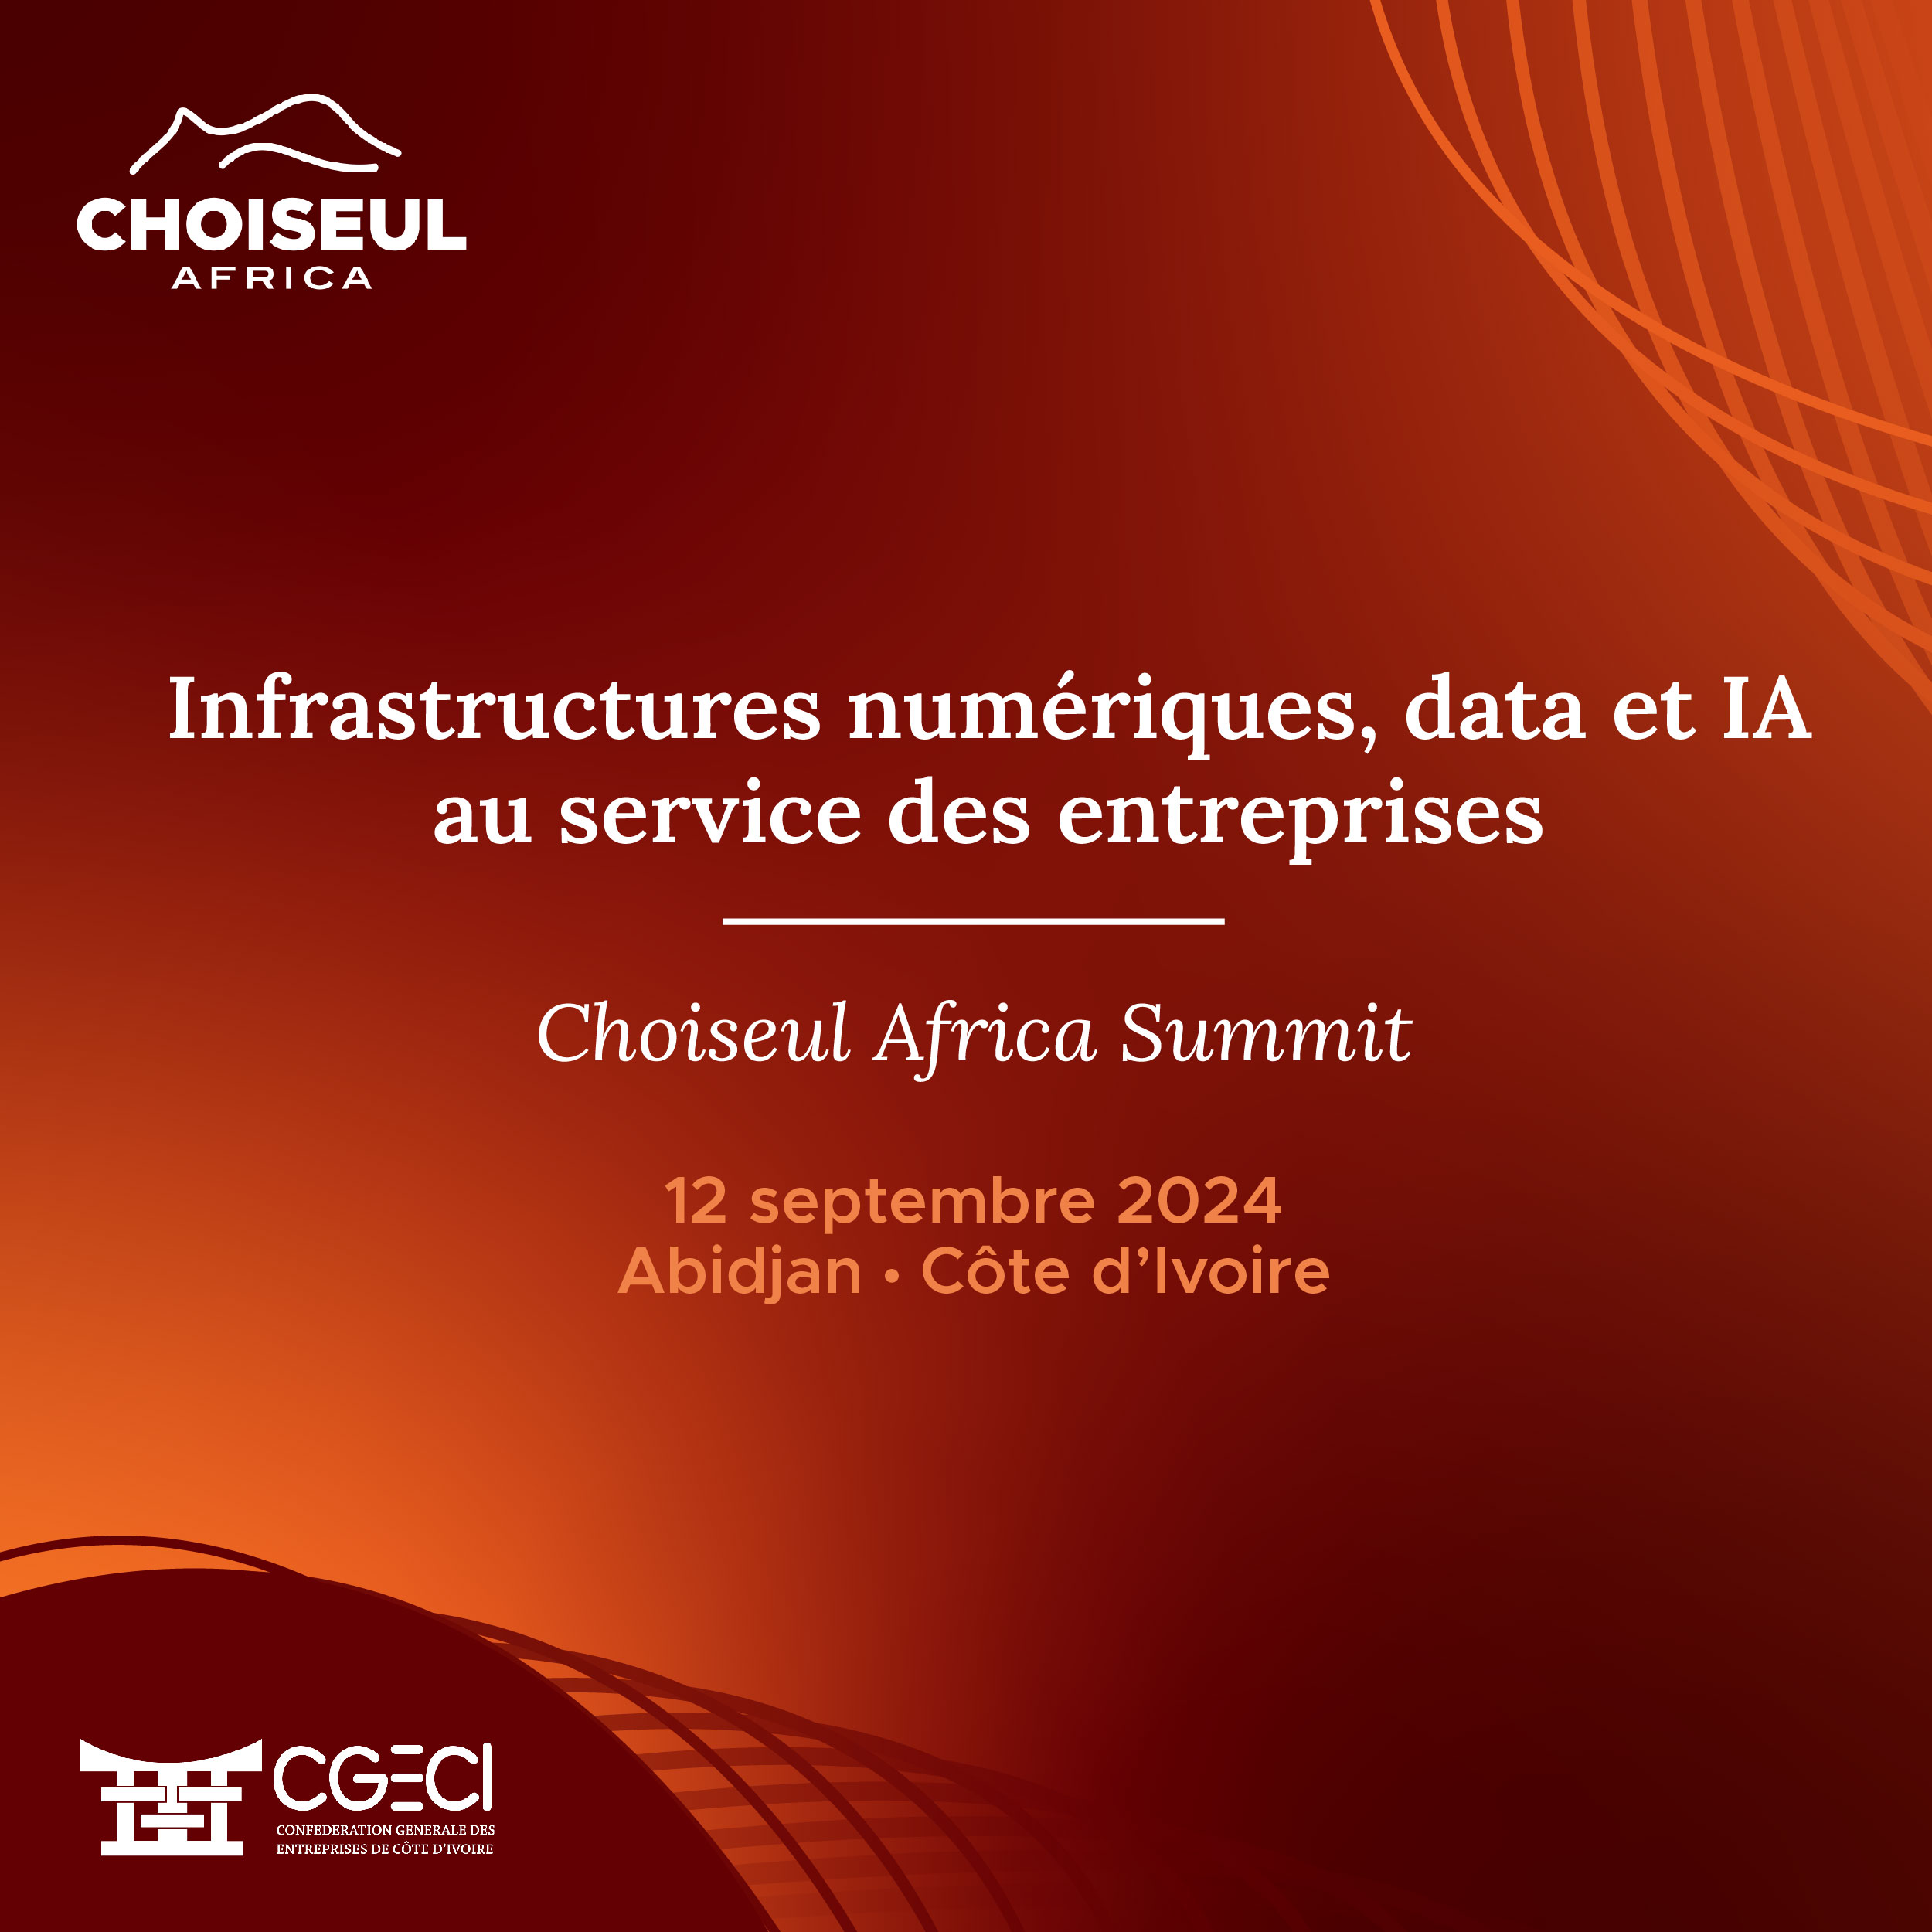 Choiseul Africa Summit | Infrastructures numériques, data et IA au service des entreprises